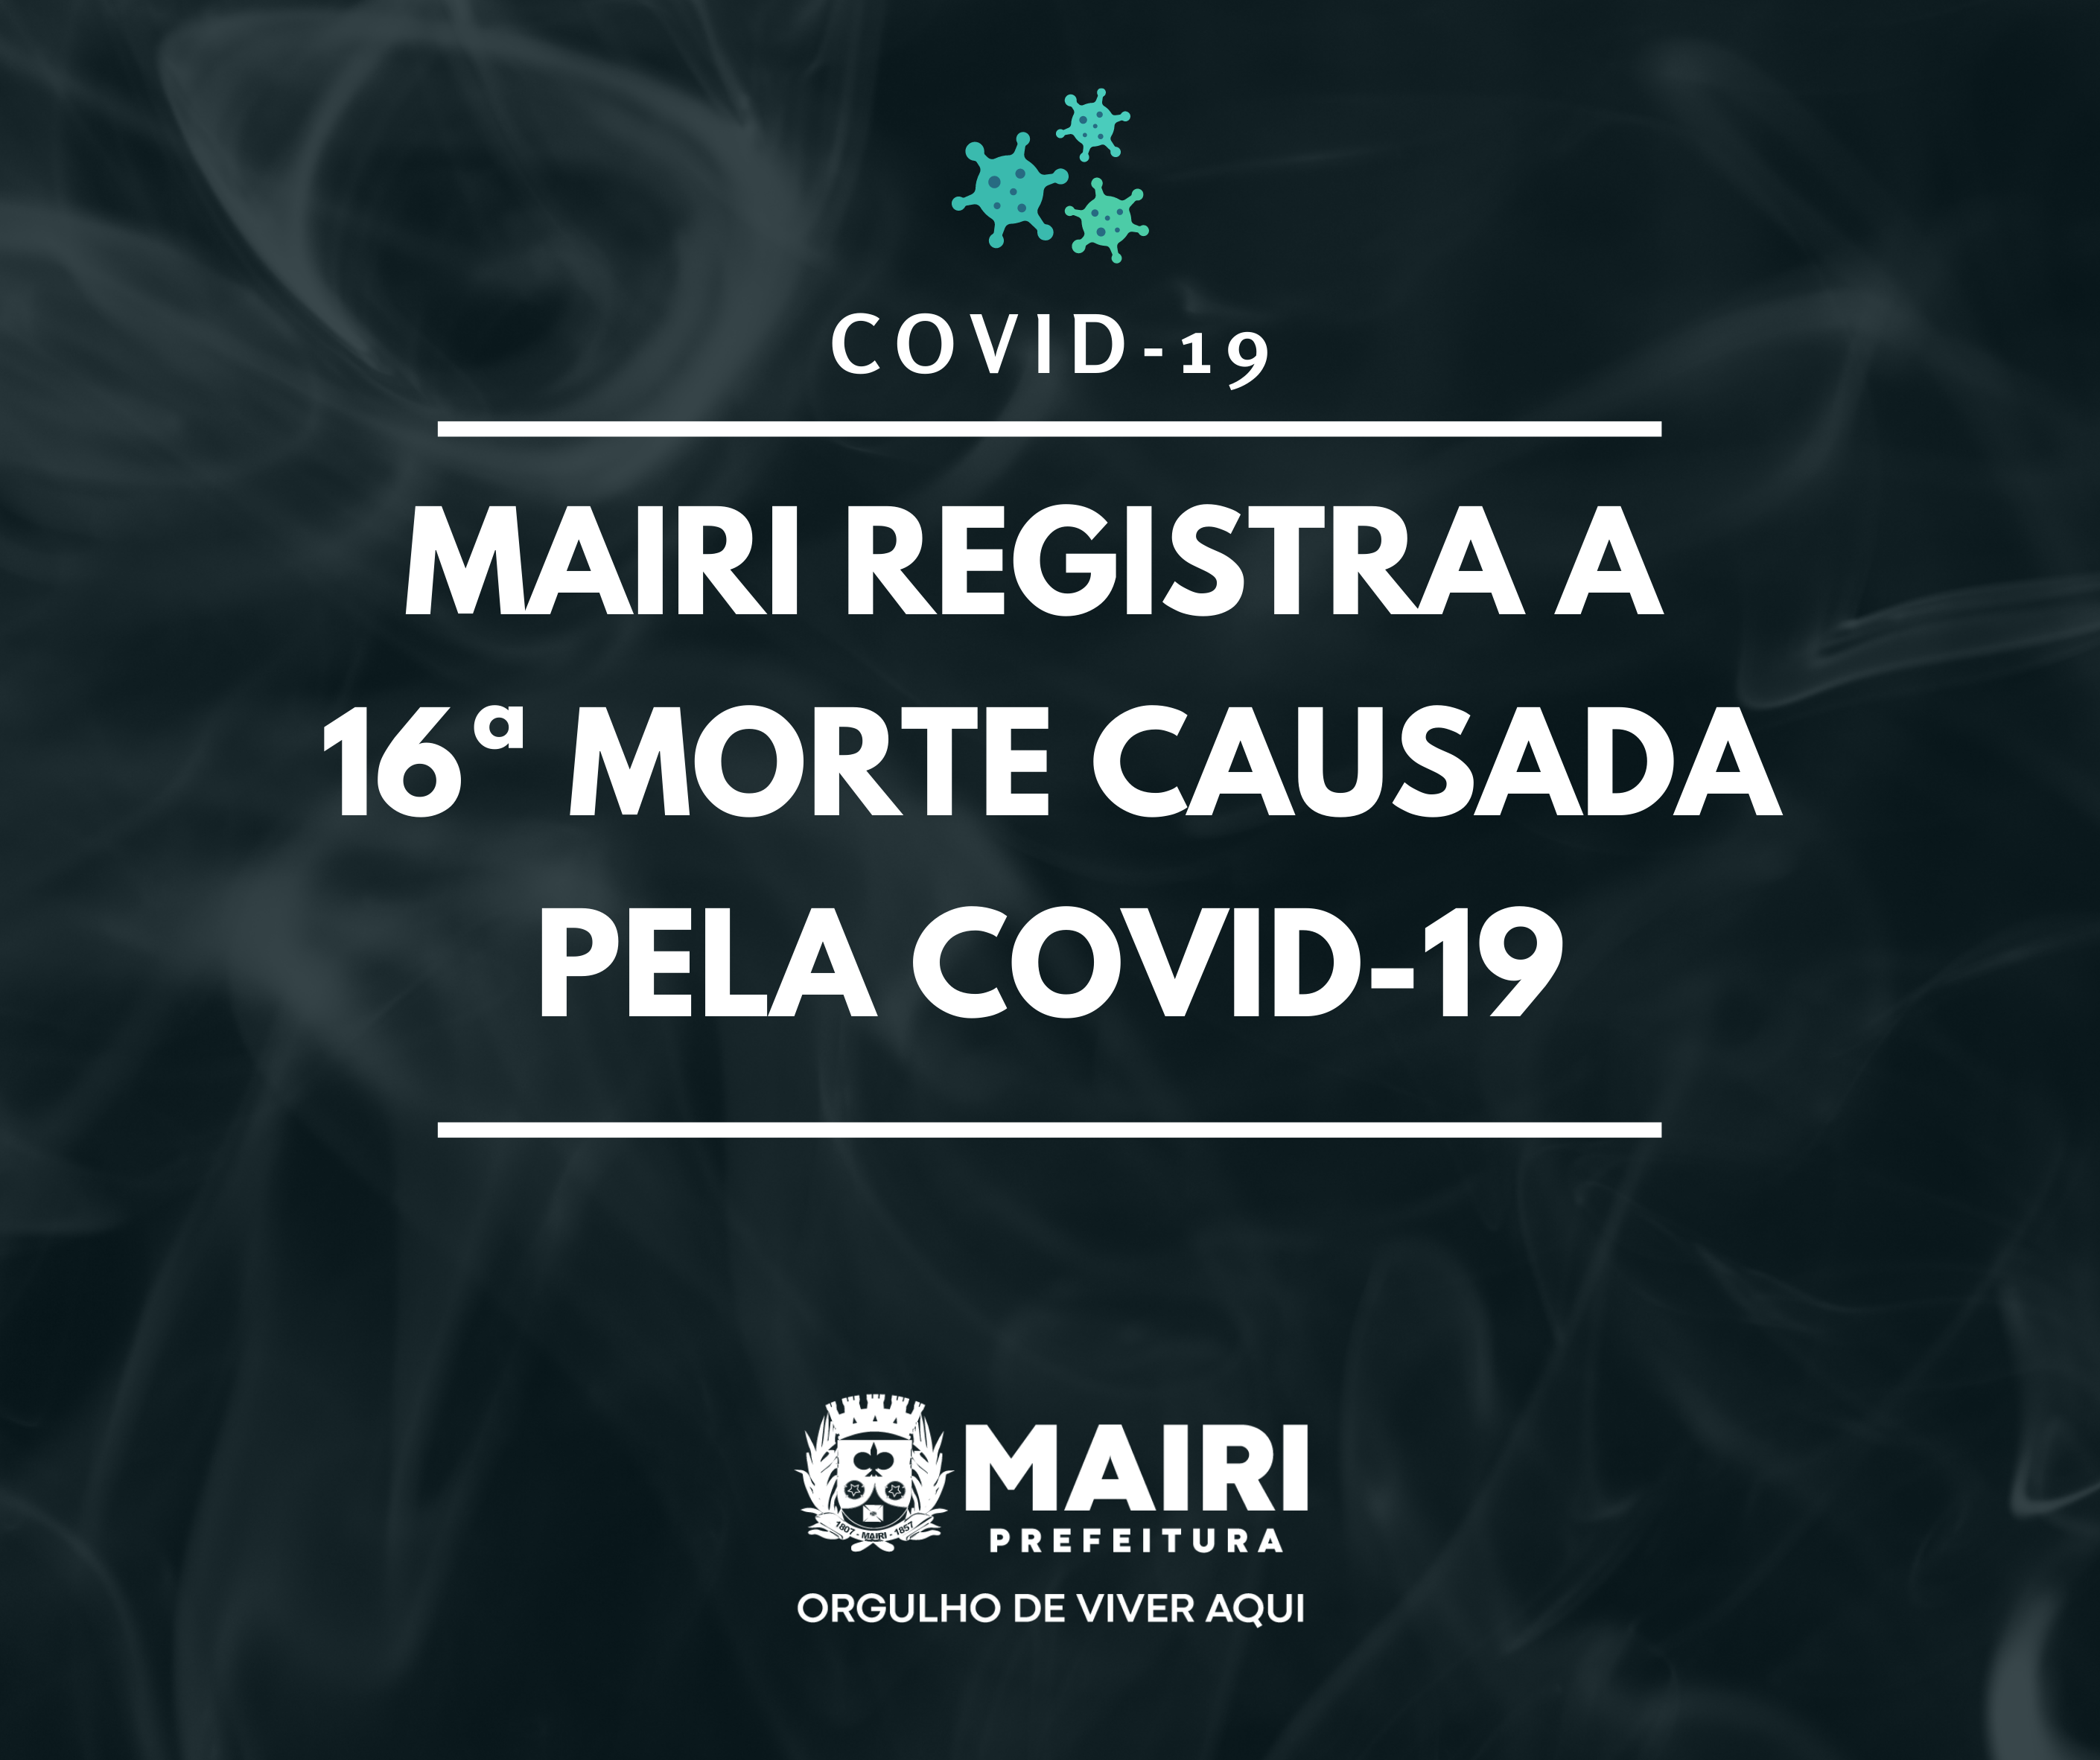 Mairi registra a 16ª morte causada pela Covid-19